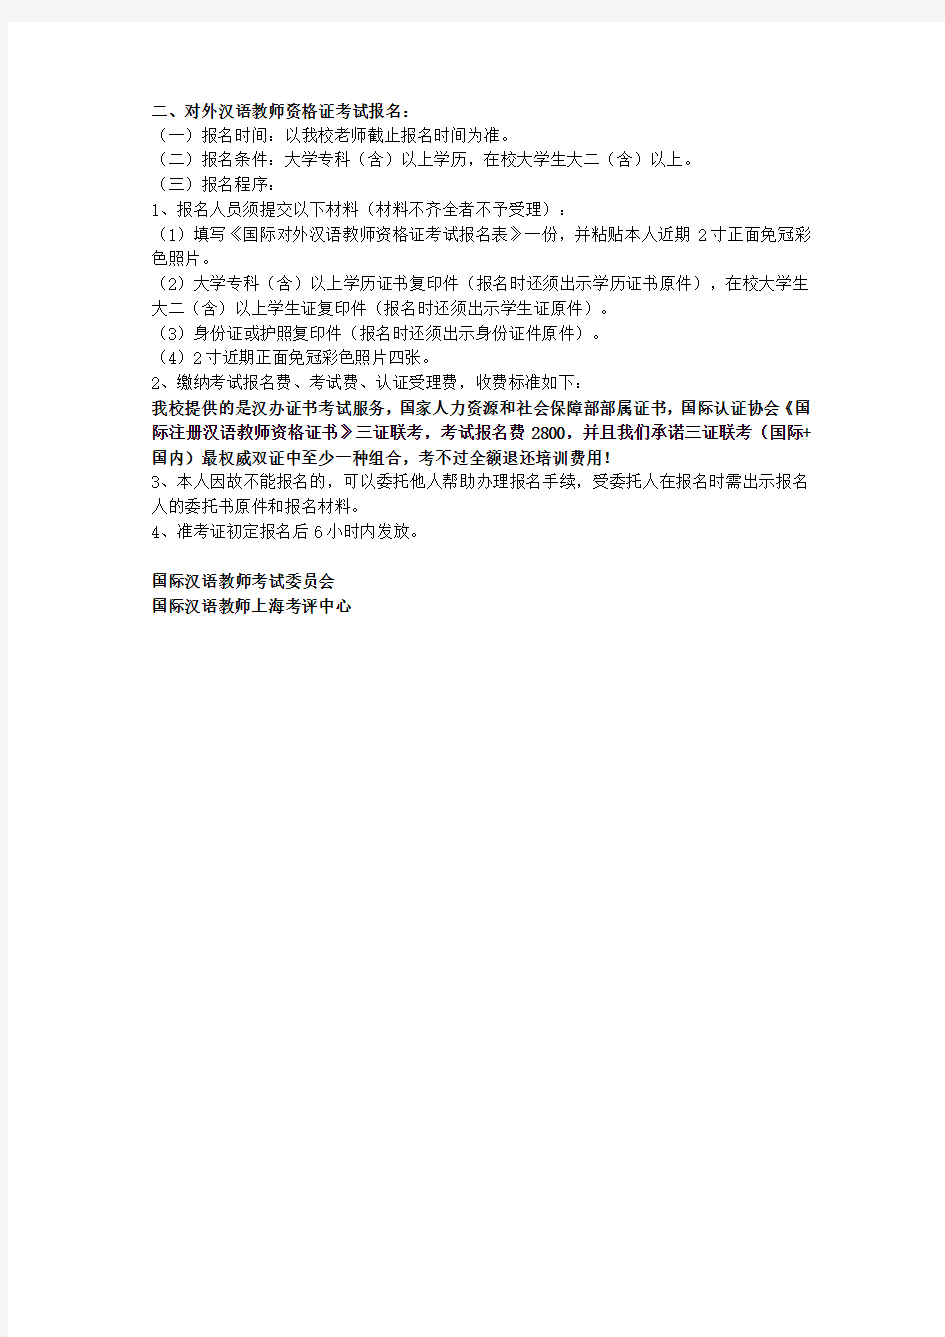 IPA国际注册汉语教师资格证考试注意事项通知